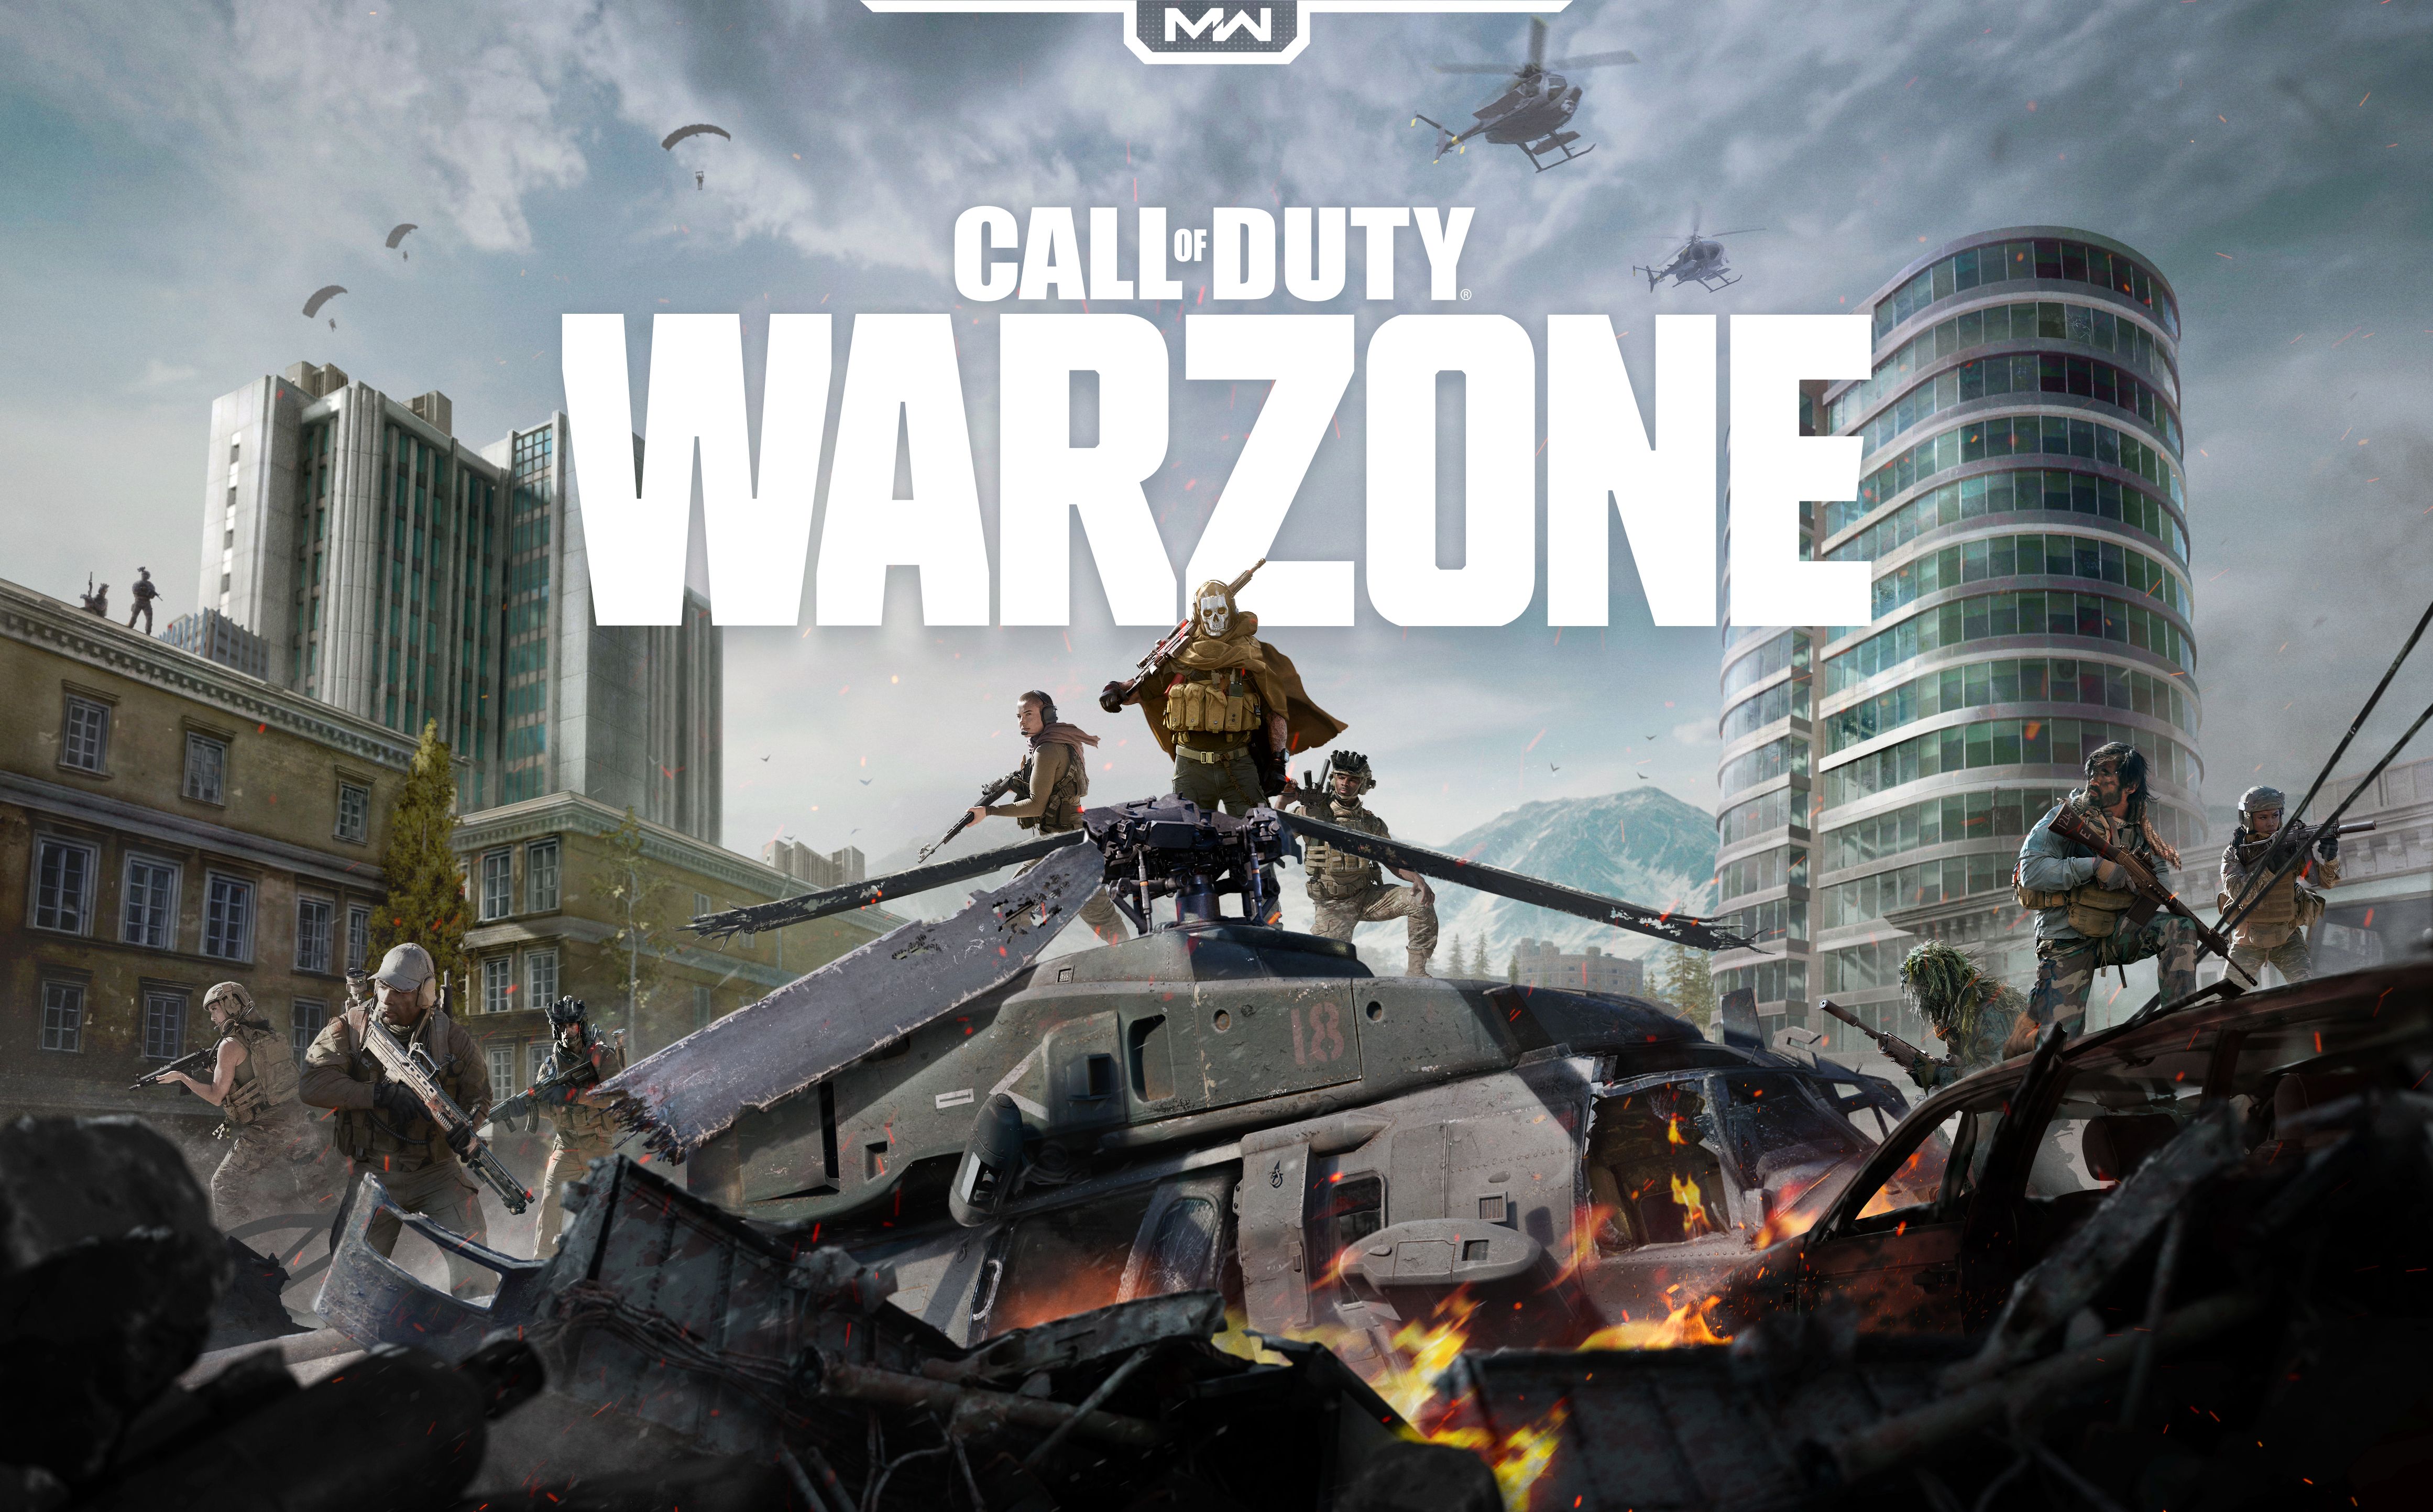 Melhores papéis de parede de Call Of Duty: Warzone para tela do telefone